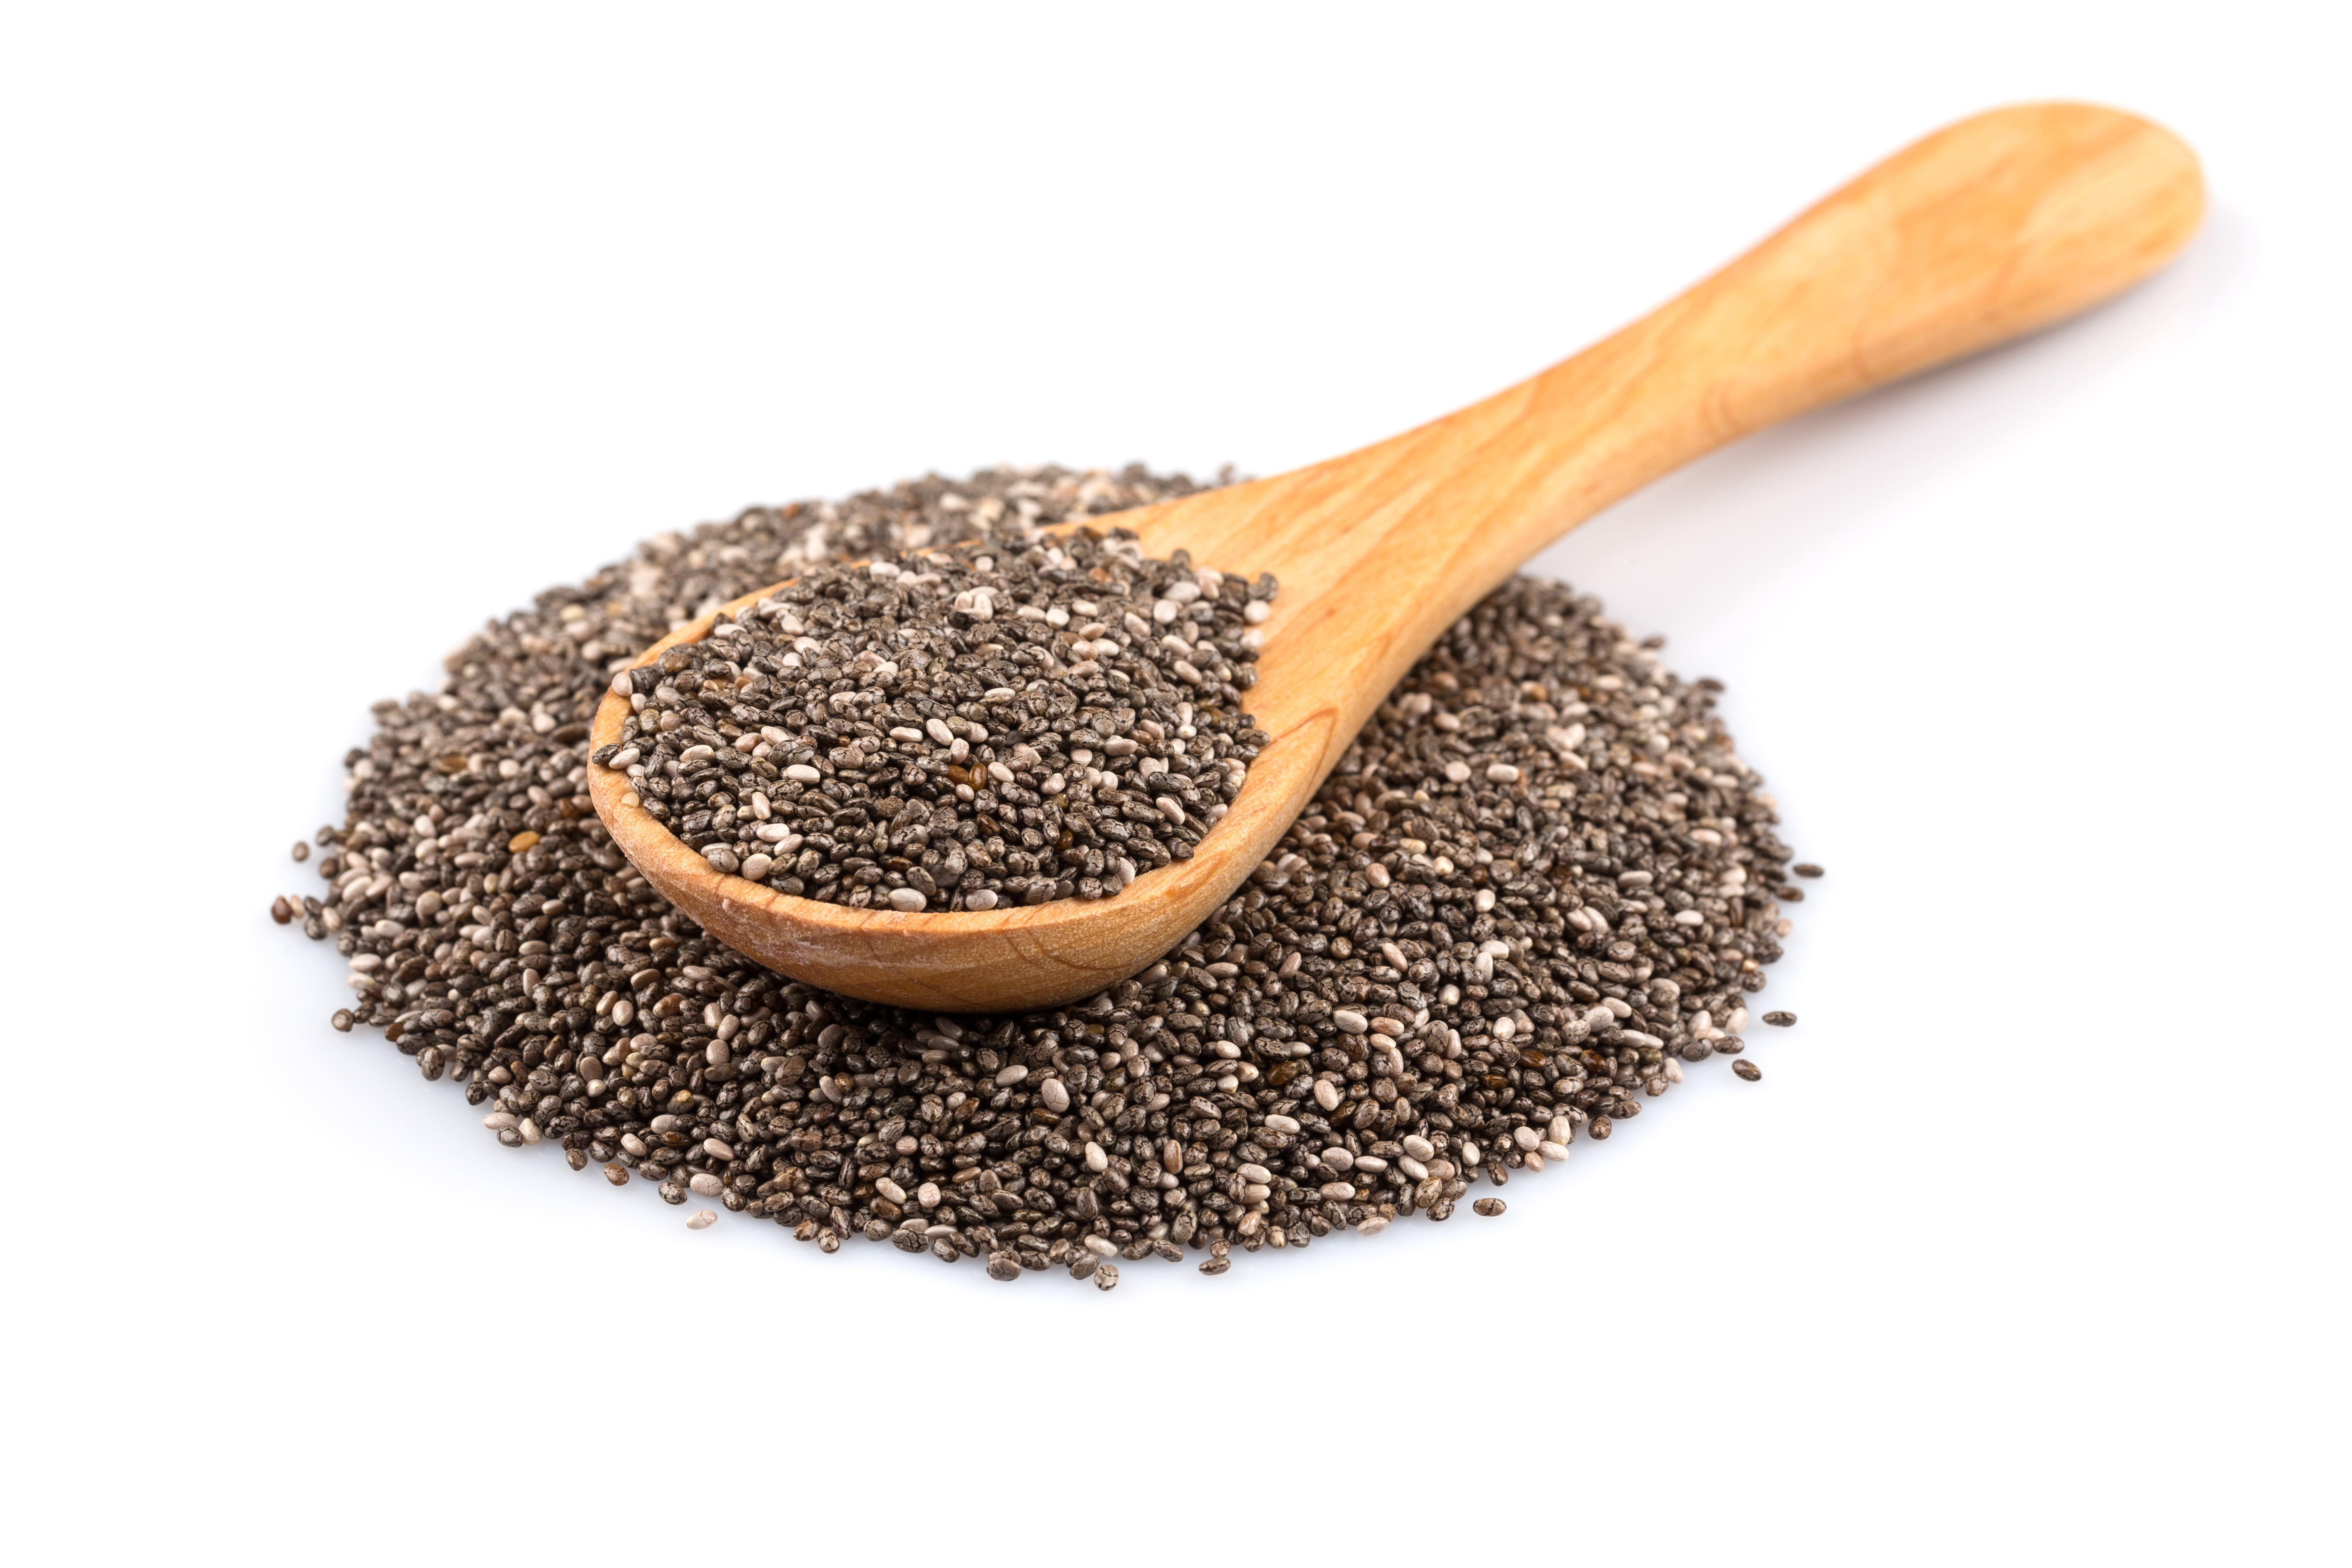 Esta combinación entre fibras solubles e insolubles pone a las semillas de chía como un alimento completamente balanceado
(Getty Images)